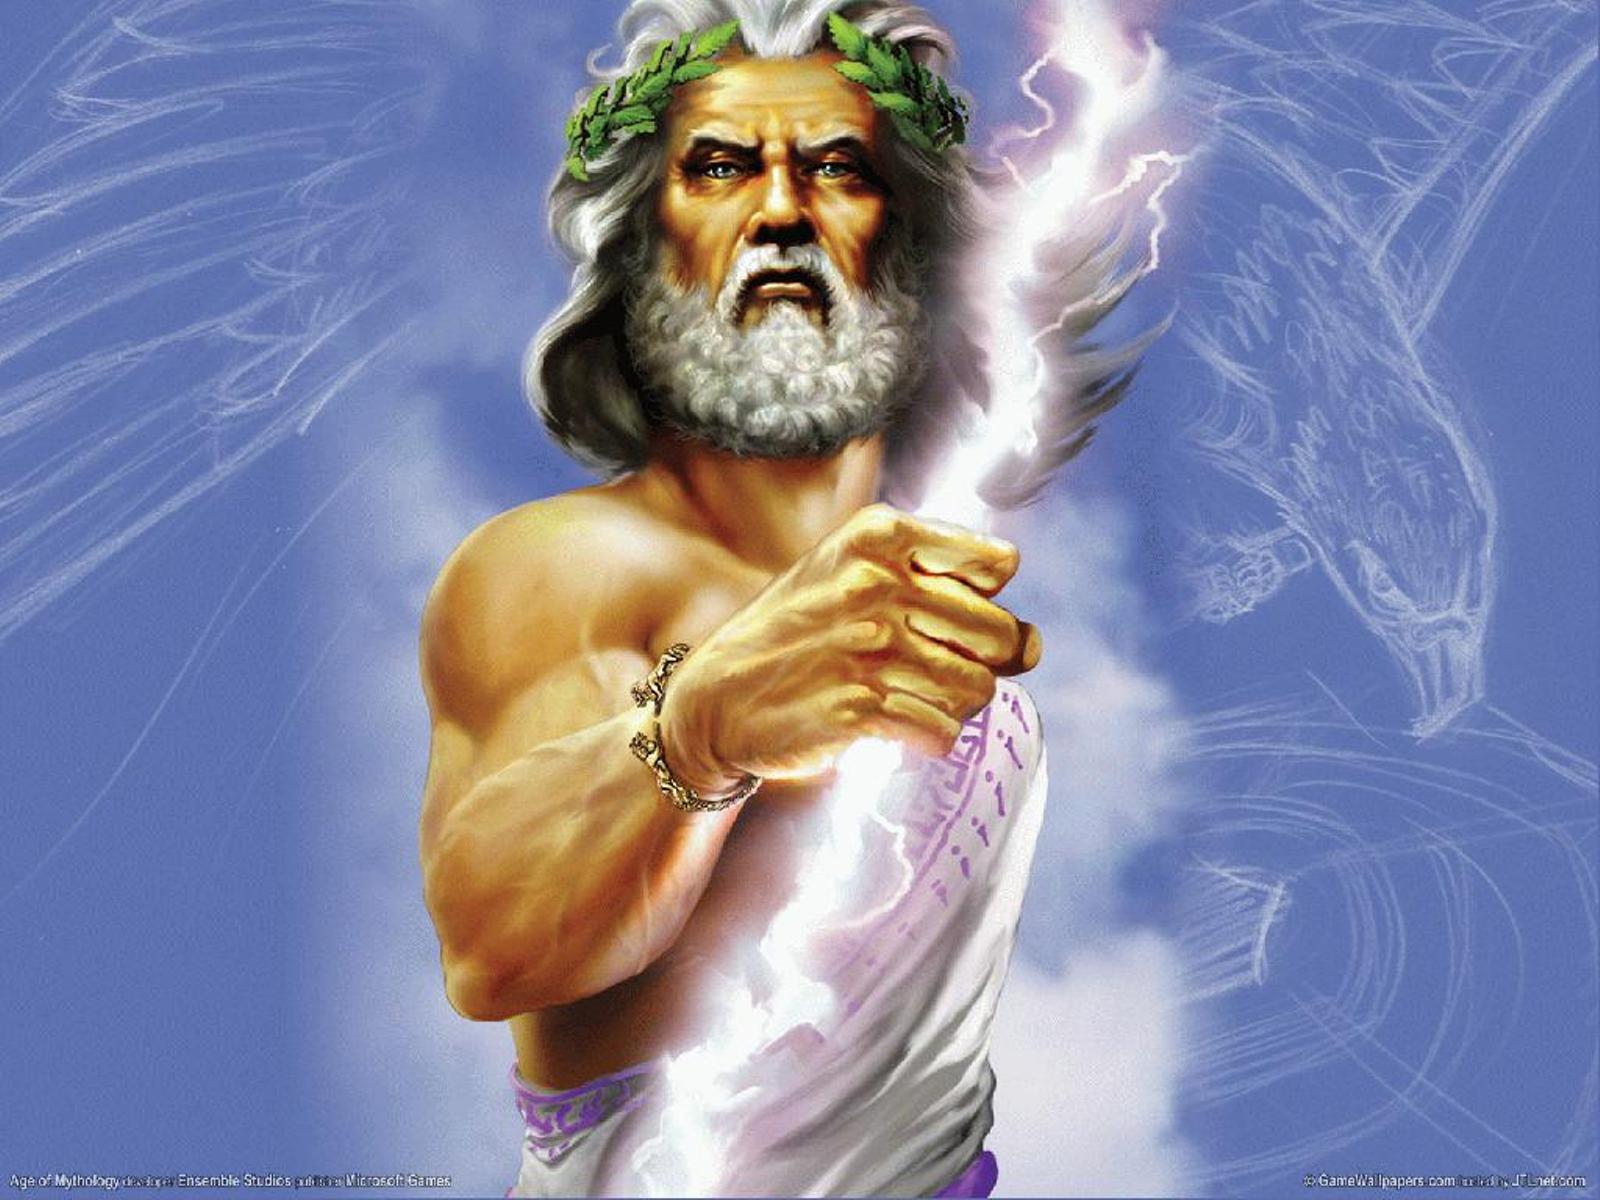 video, Games, God, Age, Of, Mythology Wallpaper